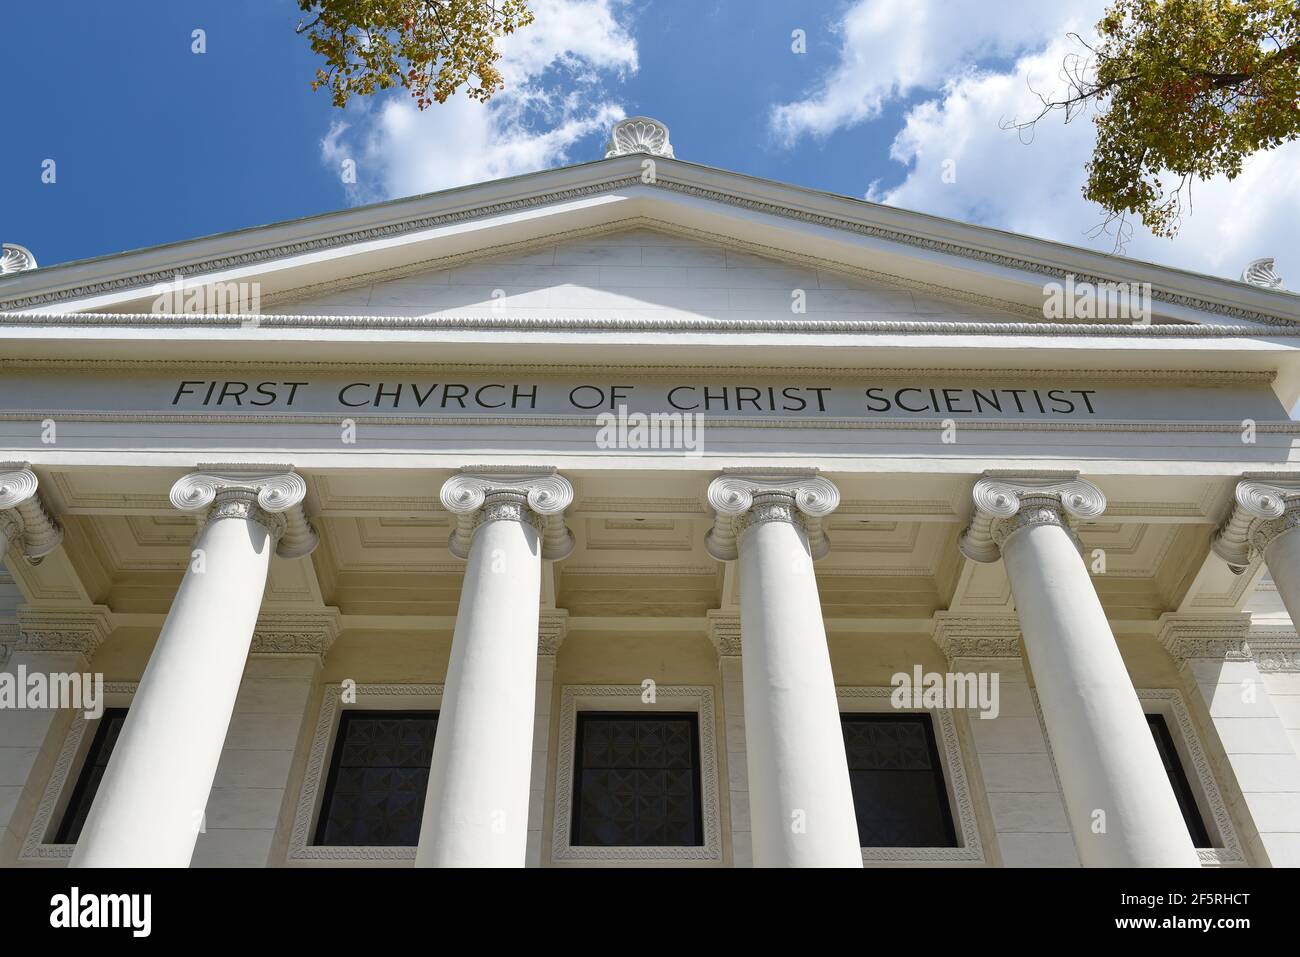 PASADENA, CALIFORNIE - 26 MARS 2021 : la première Église du Christ scientifique. Le bâtiment de style classique révival a été construit en 1909. Banque D'Images